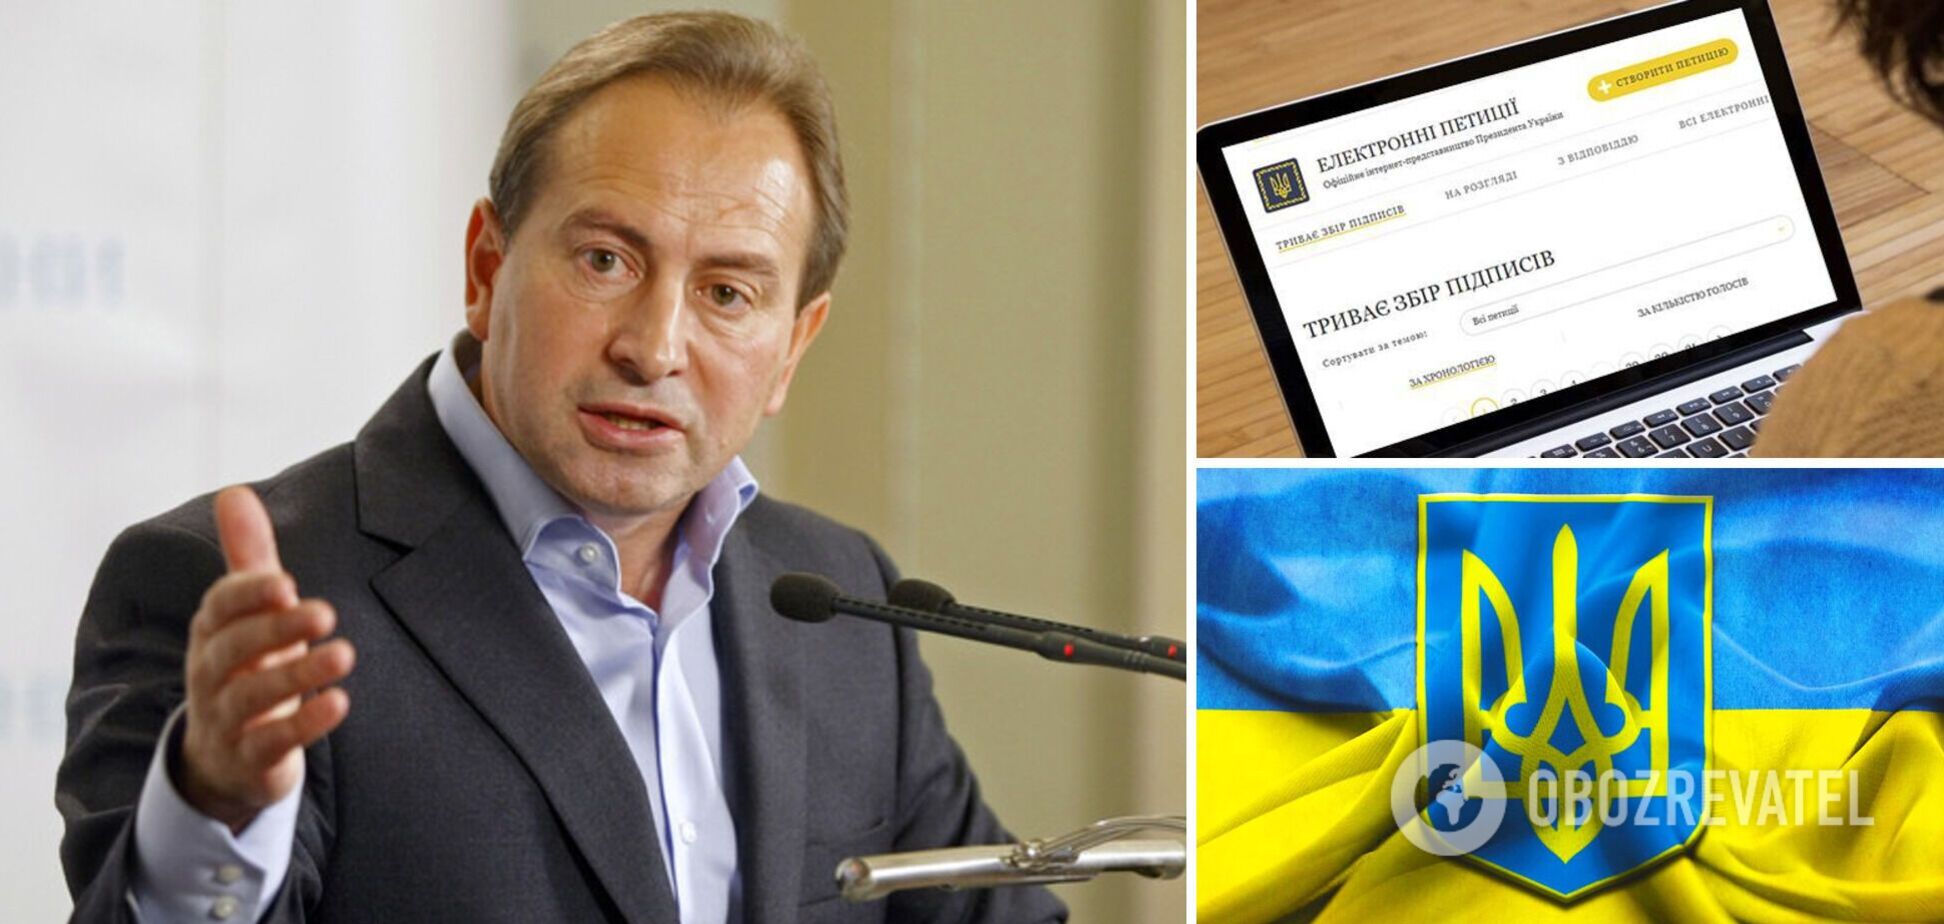 Томенко подал петицию о предотвращении и противодействии украинофобии